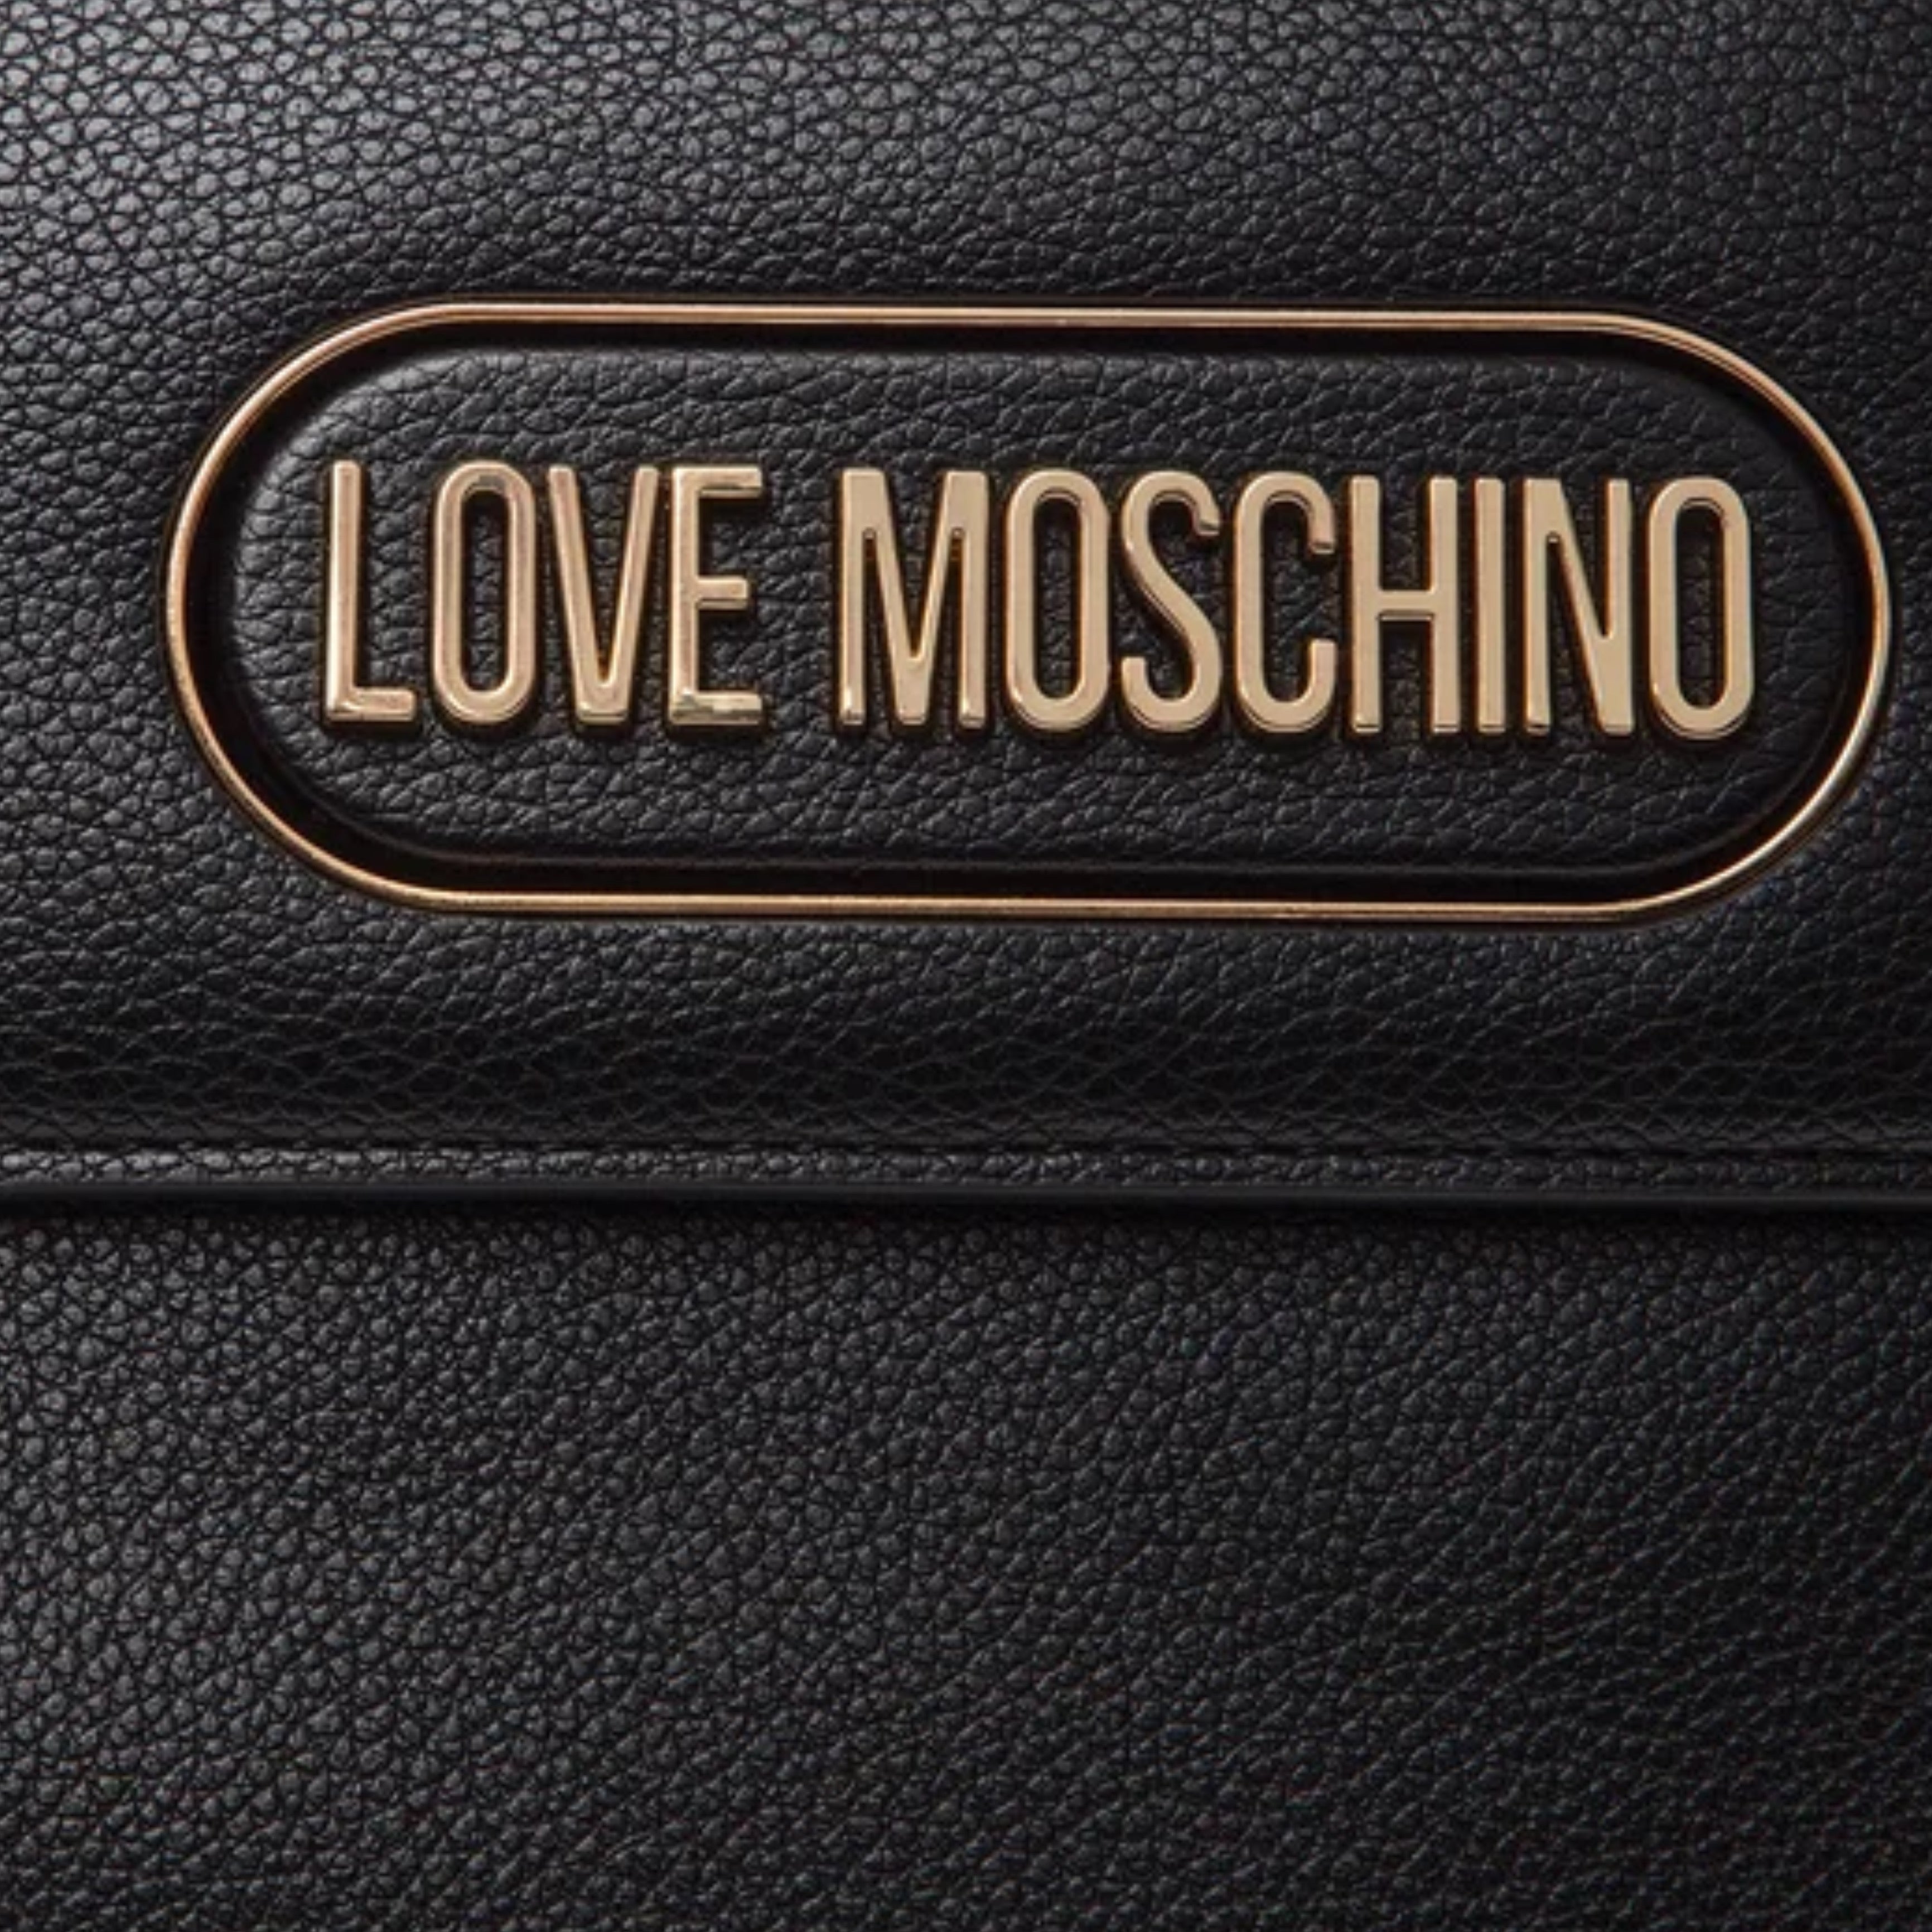 Love Moschino Women Bag